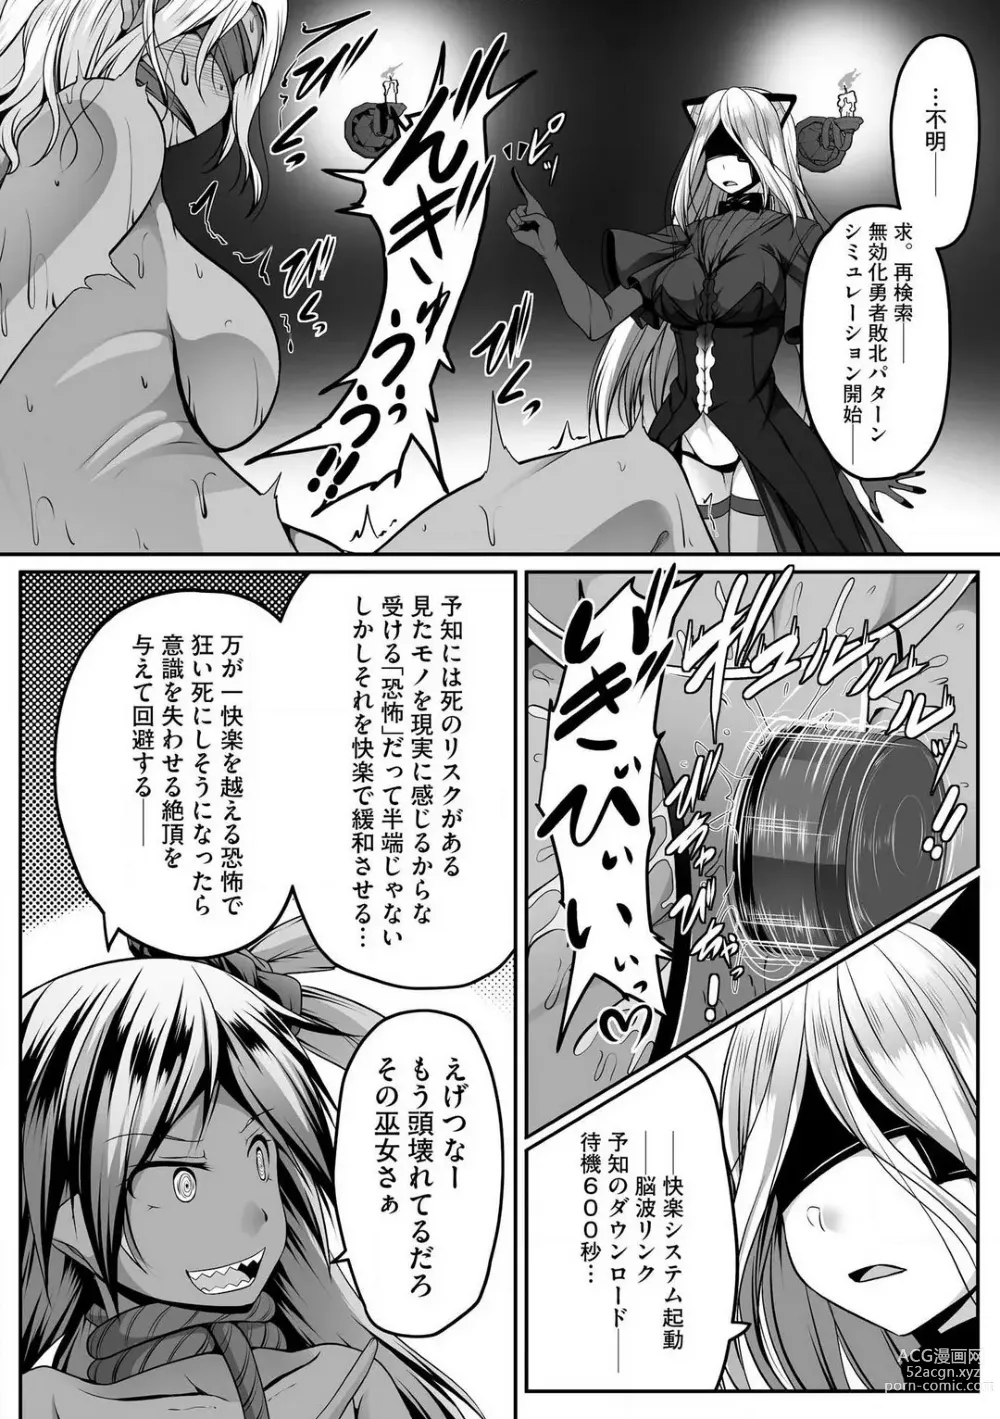 Page 357 of manga Cheat Skill Shihai